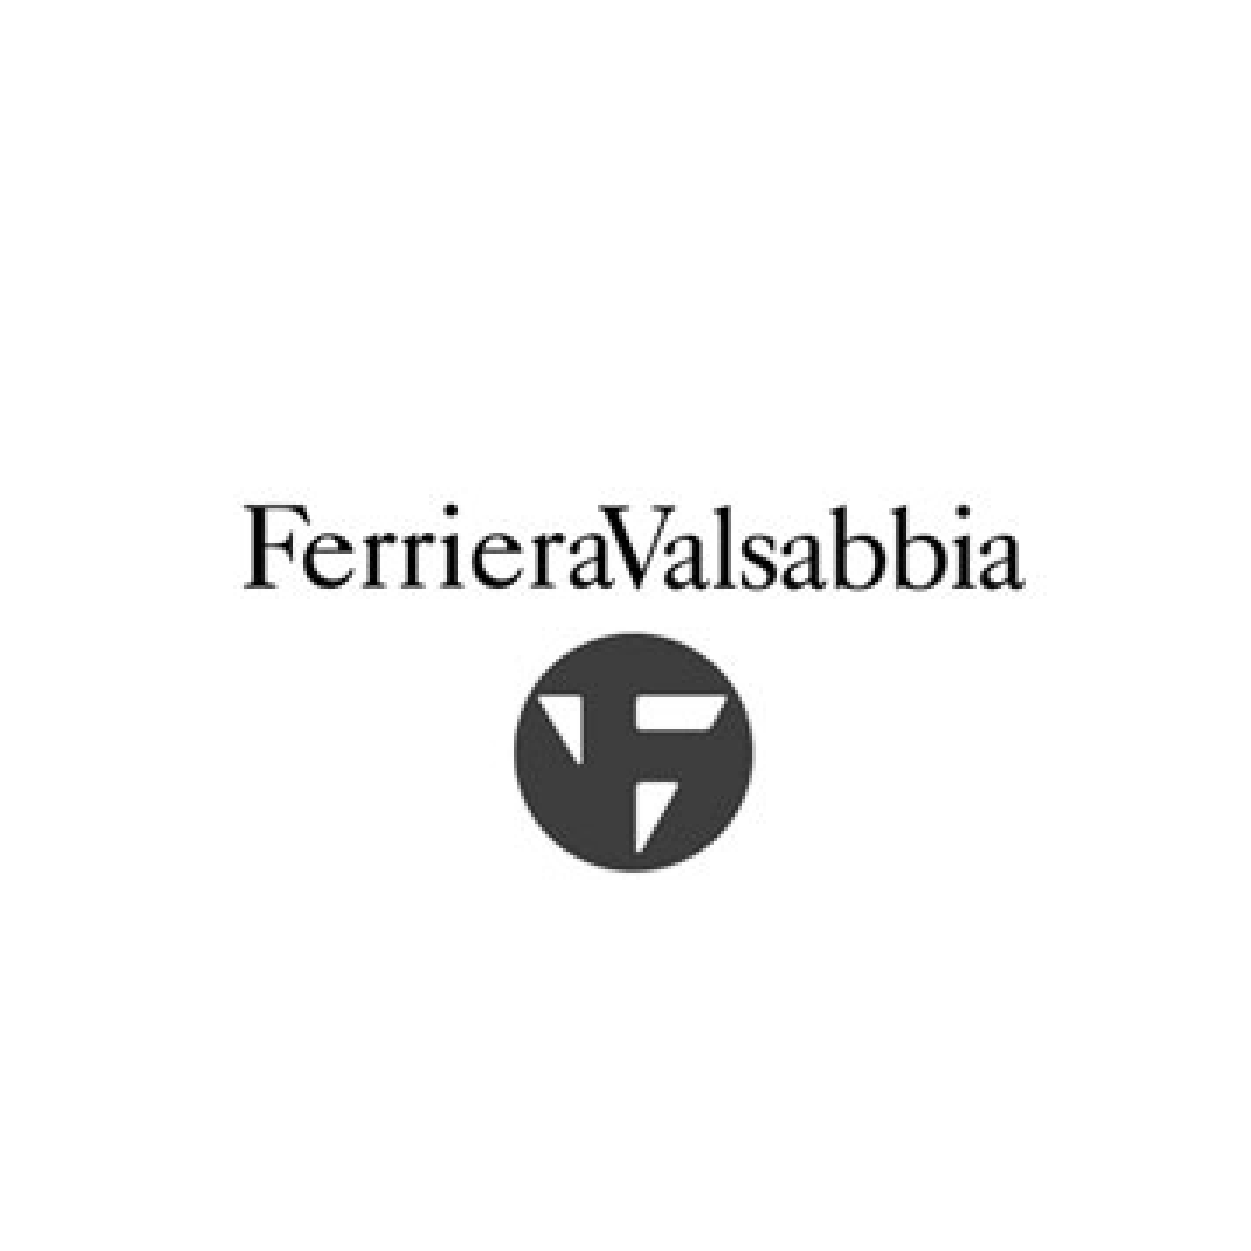 Adveartising Ferriera Valsabbia | Ad.One Agenzia di comunicazione